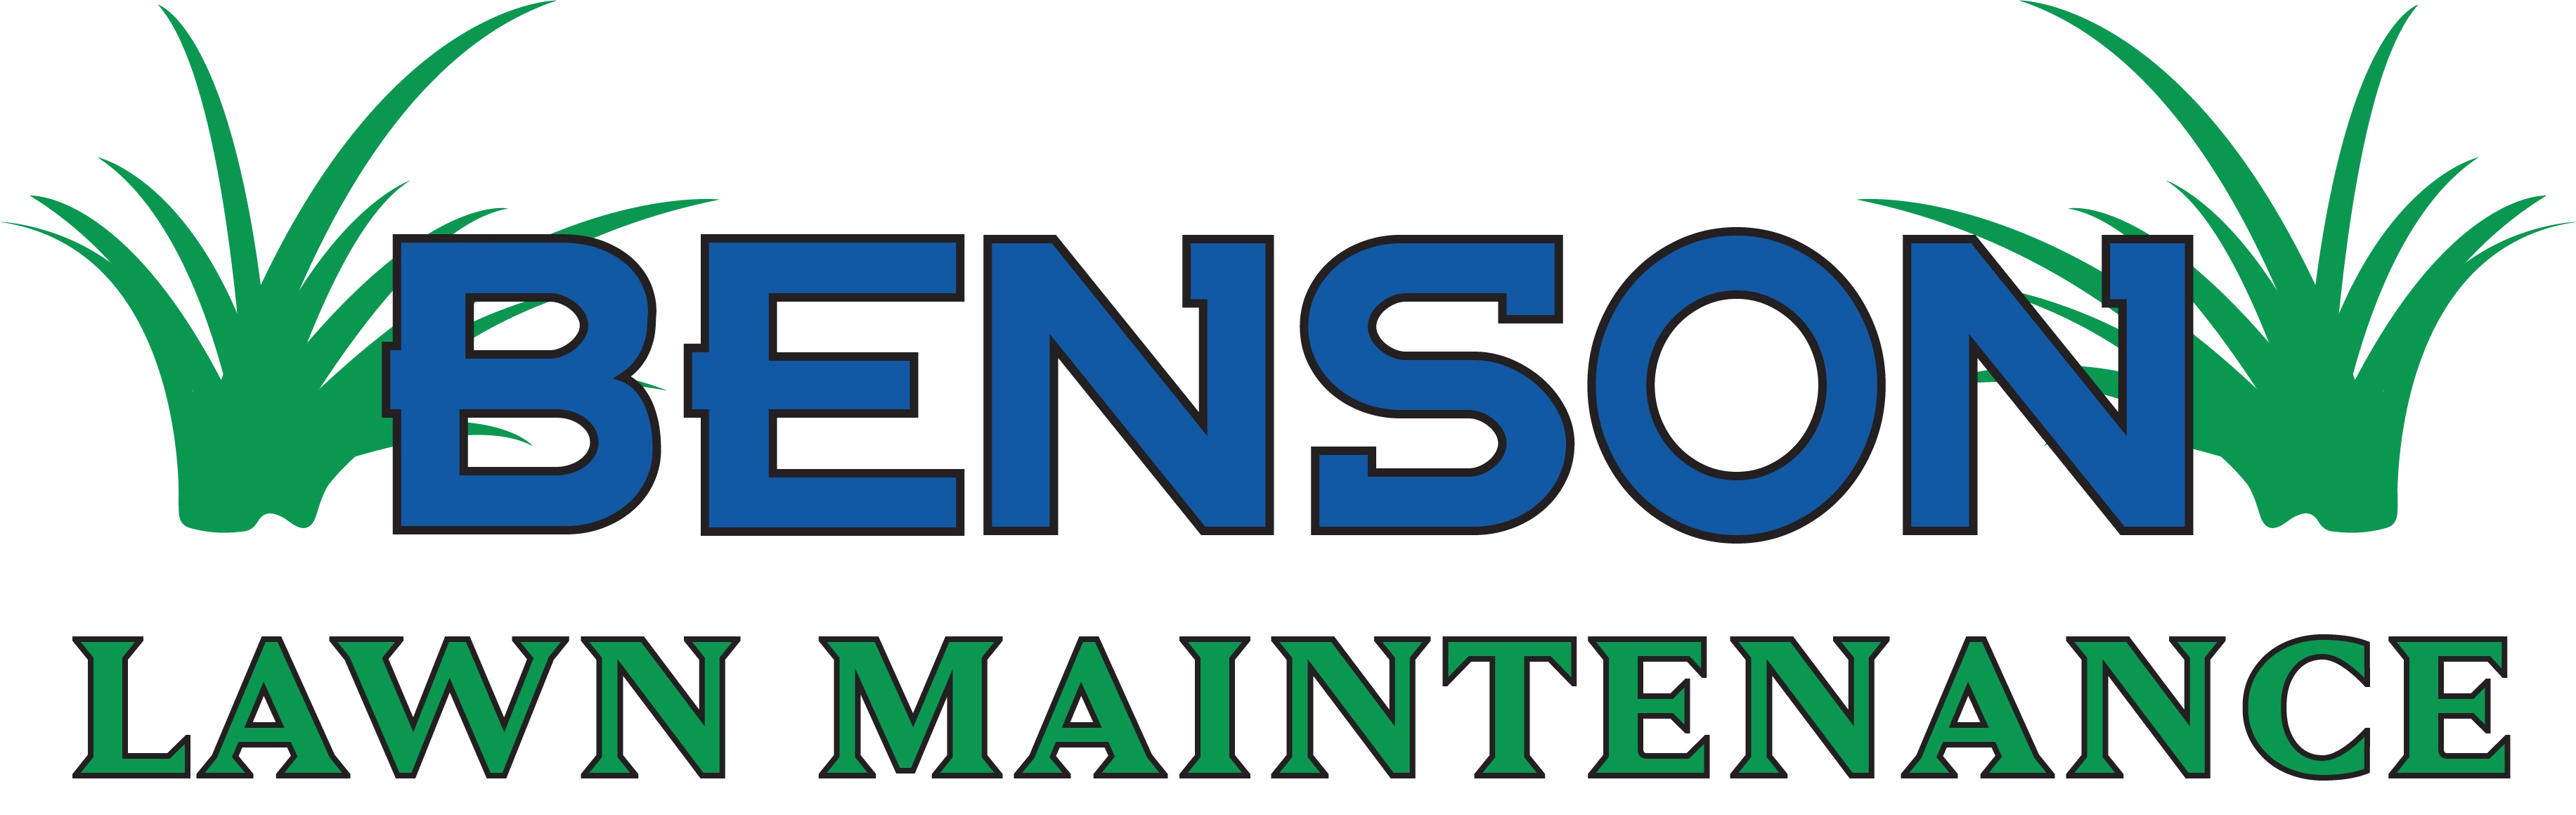 Benson Lawn Maintenance Logo